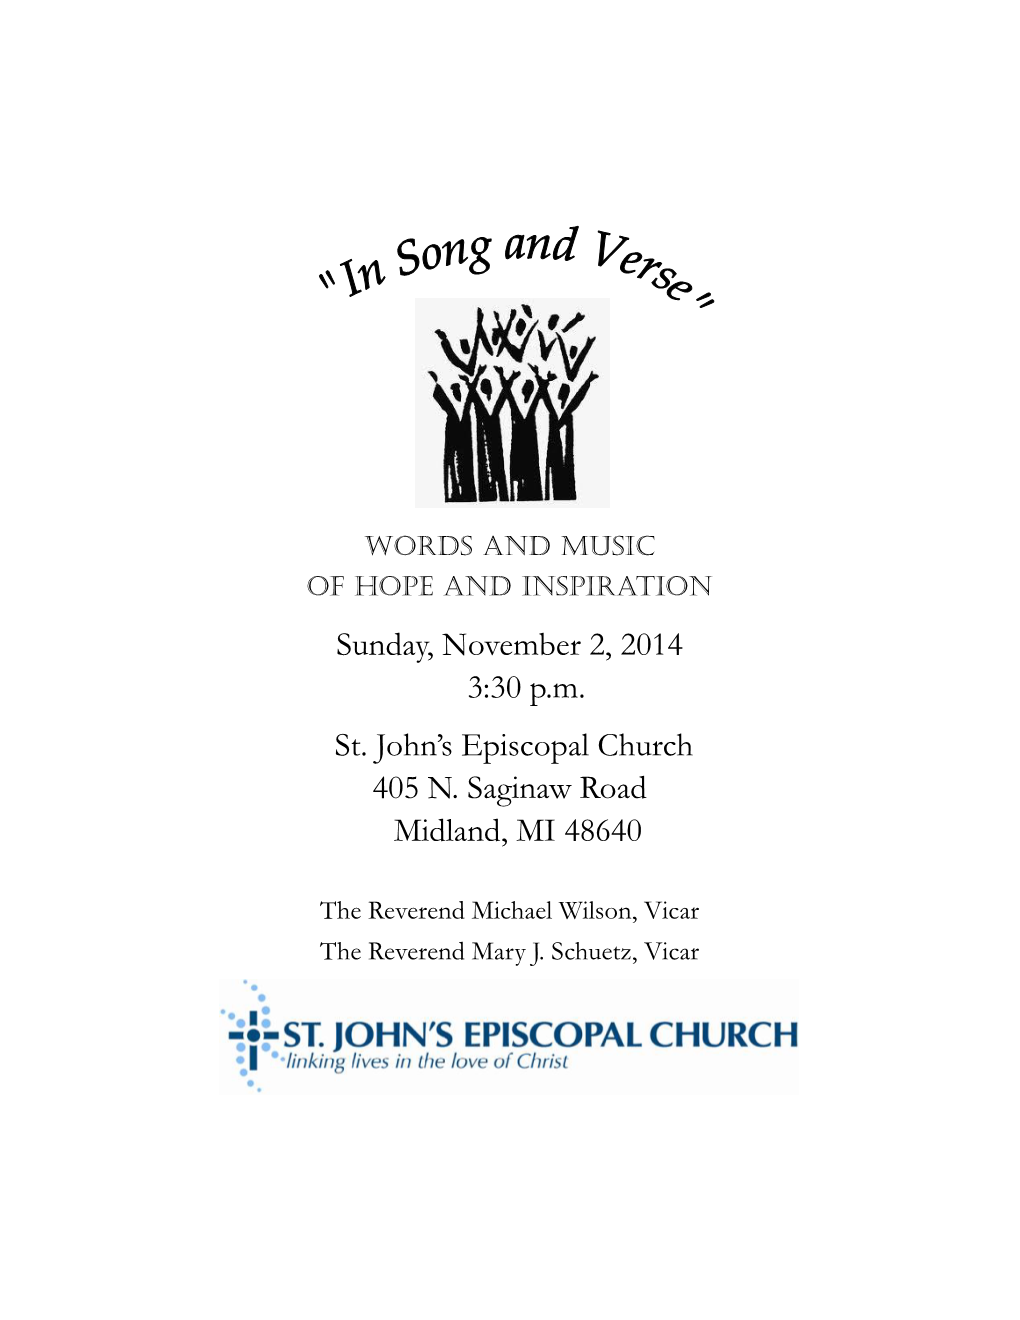 Sunday, November 2, 2014 3:30 P.M. St. John's Episcopal Church 405 N